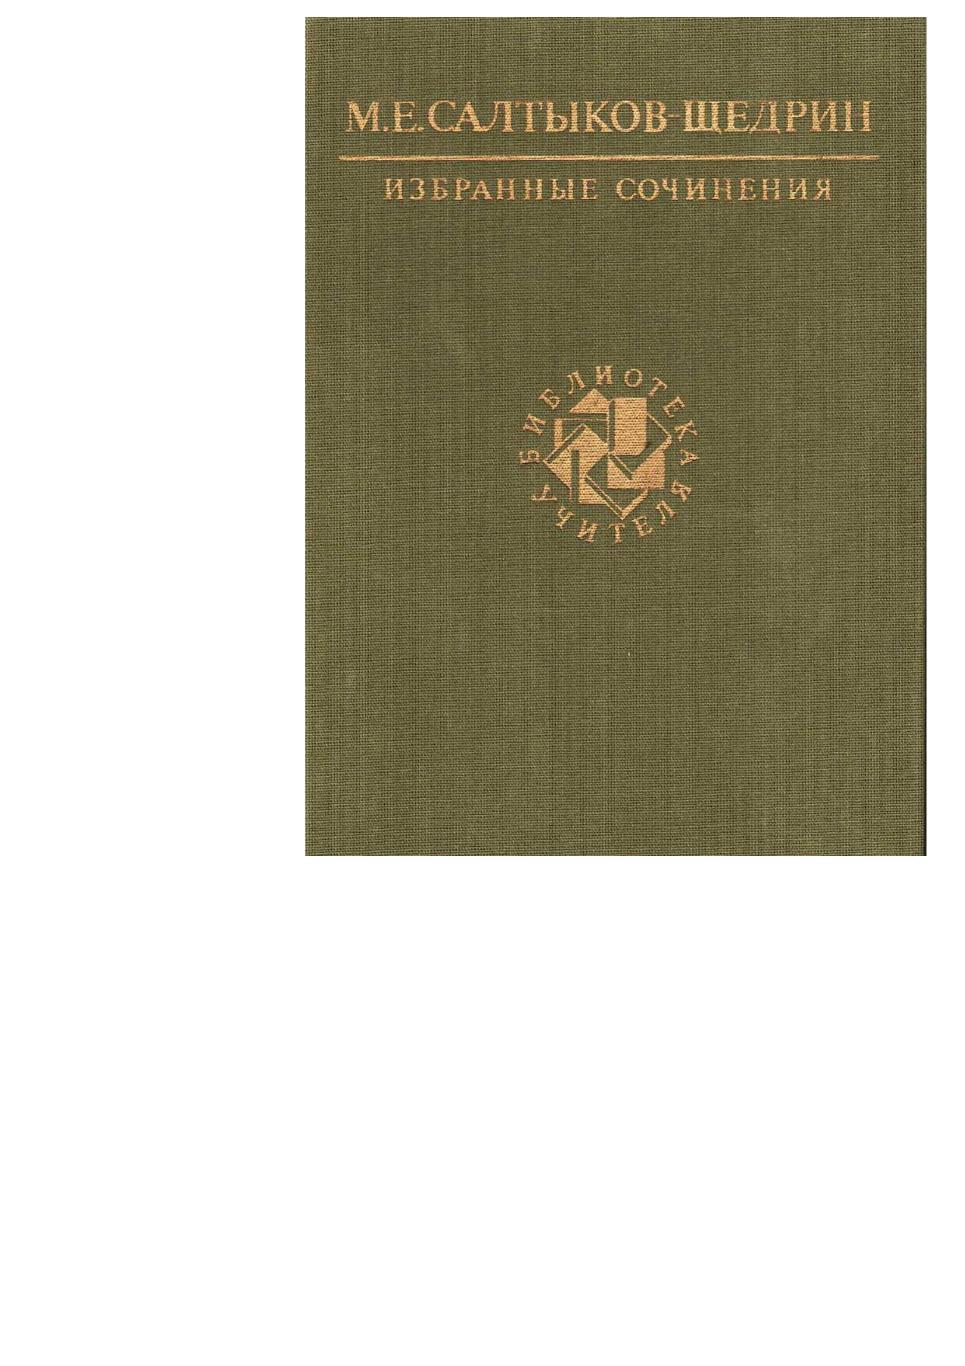 Салтыков-Щедрин М.Е. Избранные сочинения. – М., 1989. Библиотека учител